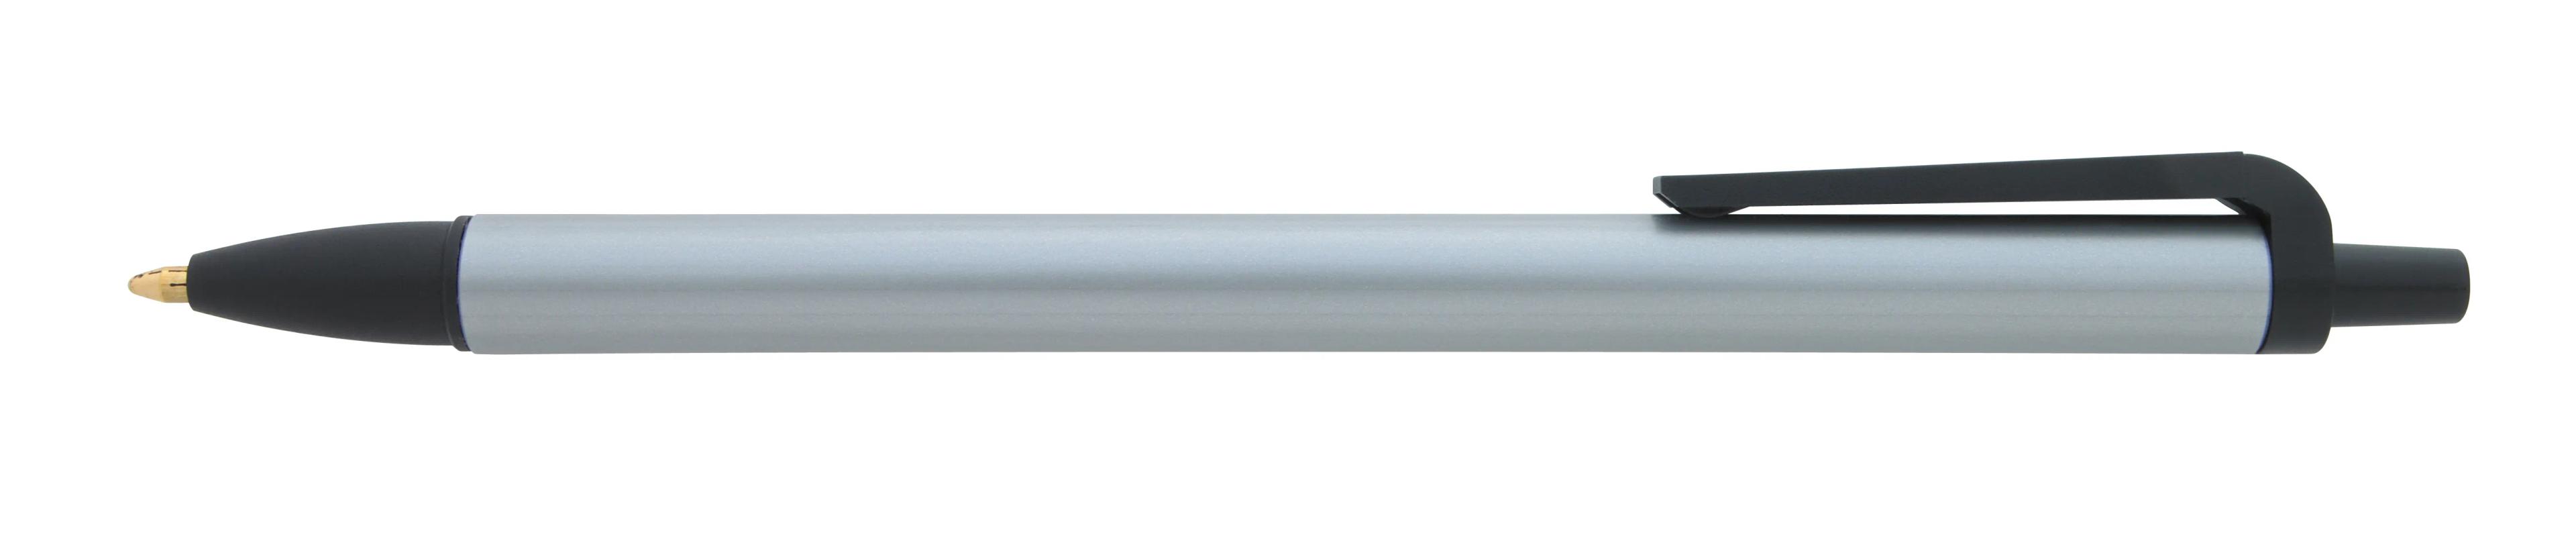 Metallic Contender Pen 5 of 12